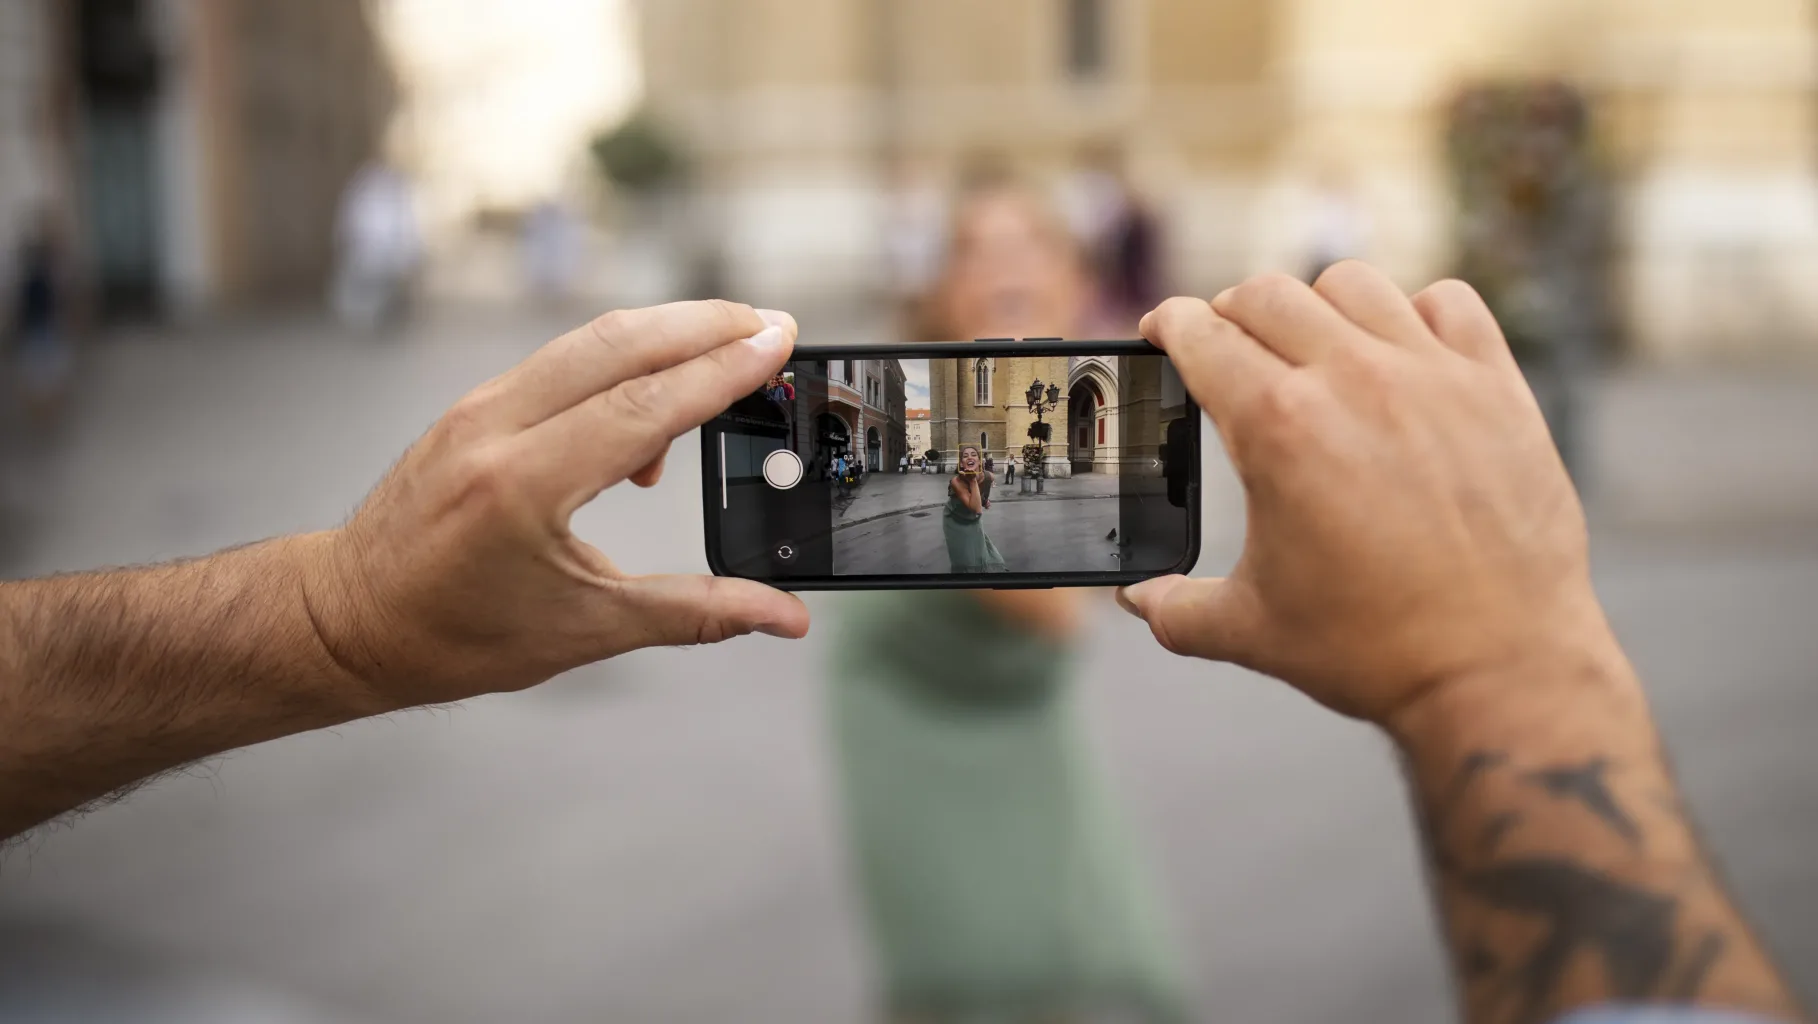 Como remover pessoas das suas fotos no iphone usando apps. Aprenda a remover pessoas de suas fotos no iphone de forma fácil e rápida, utilizando aplicativos simples de edição.